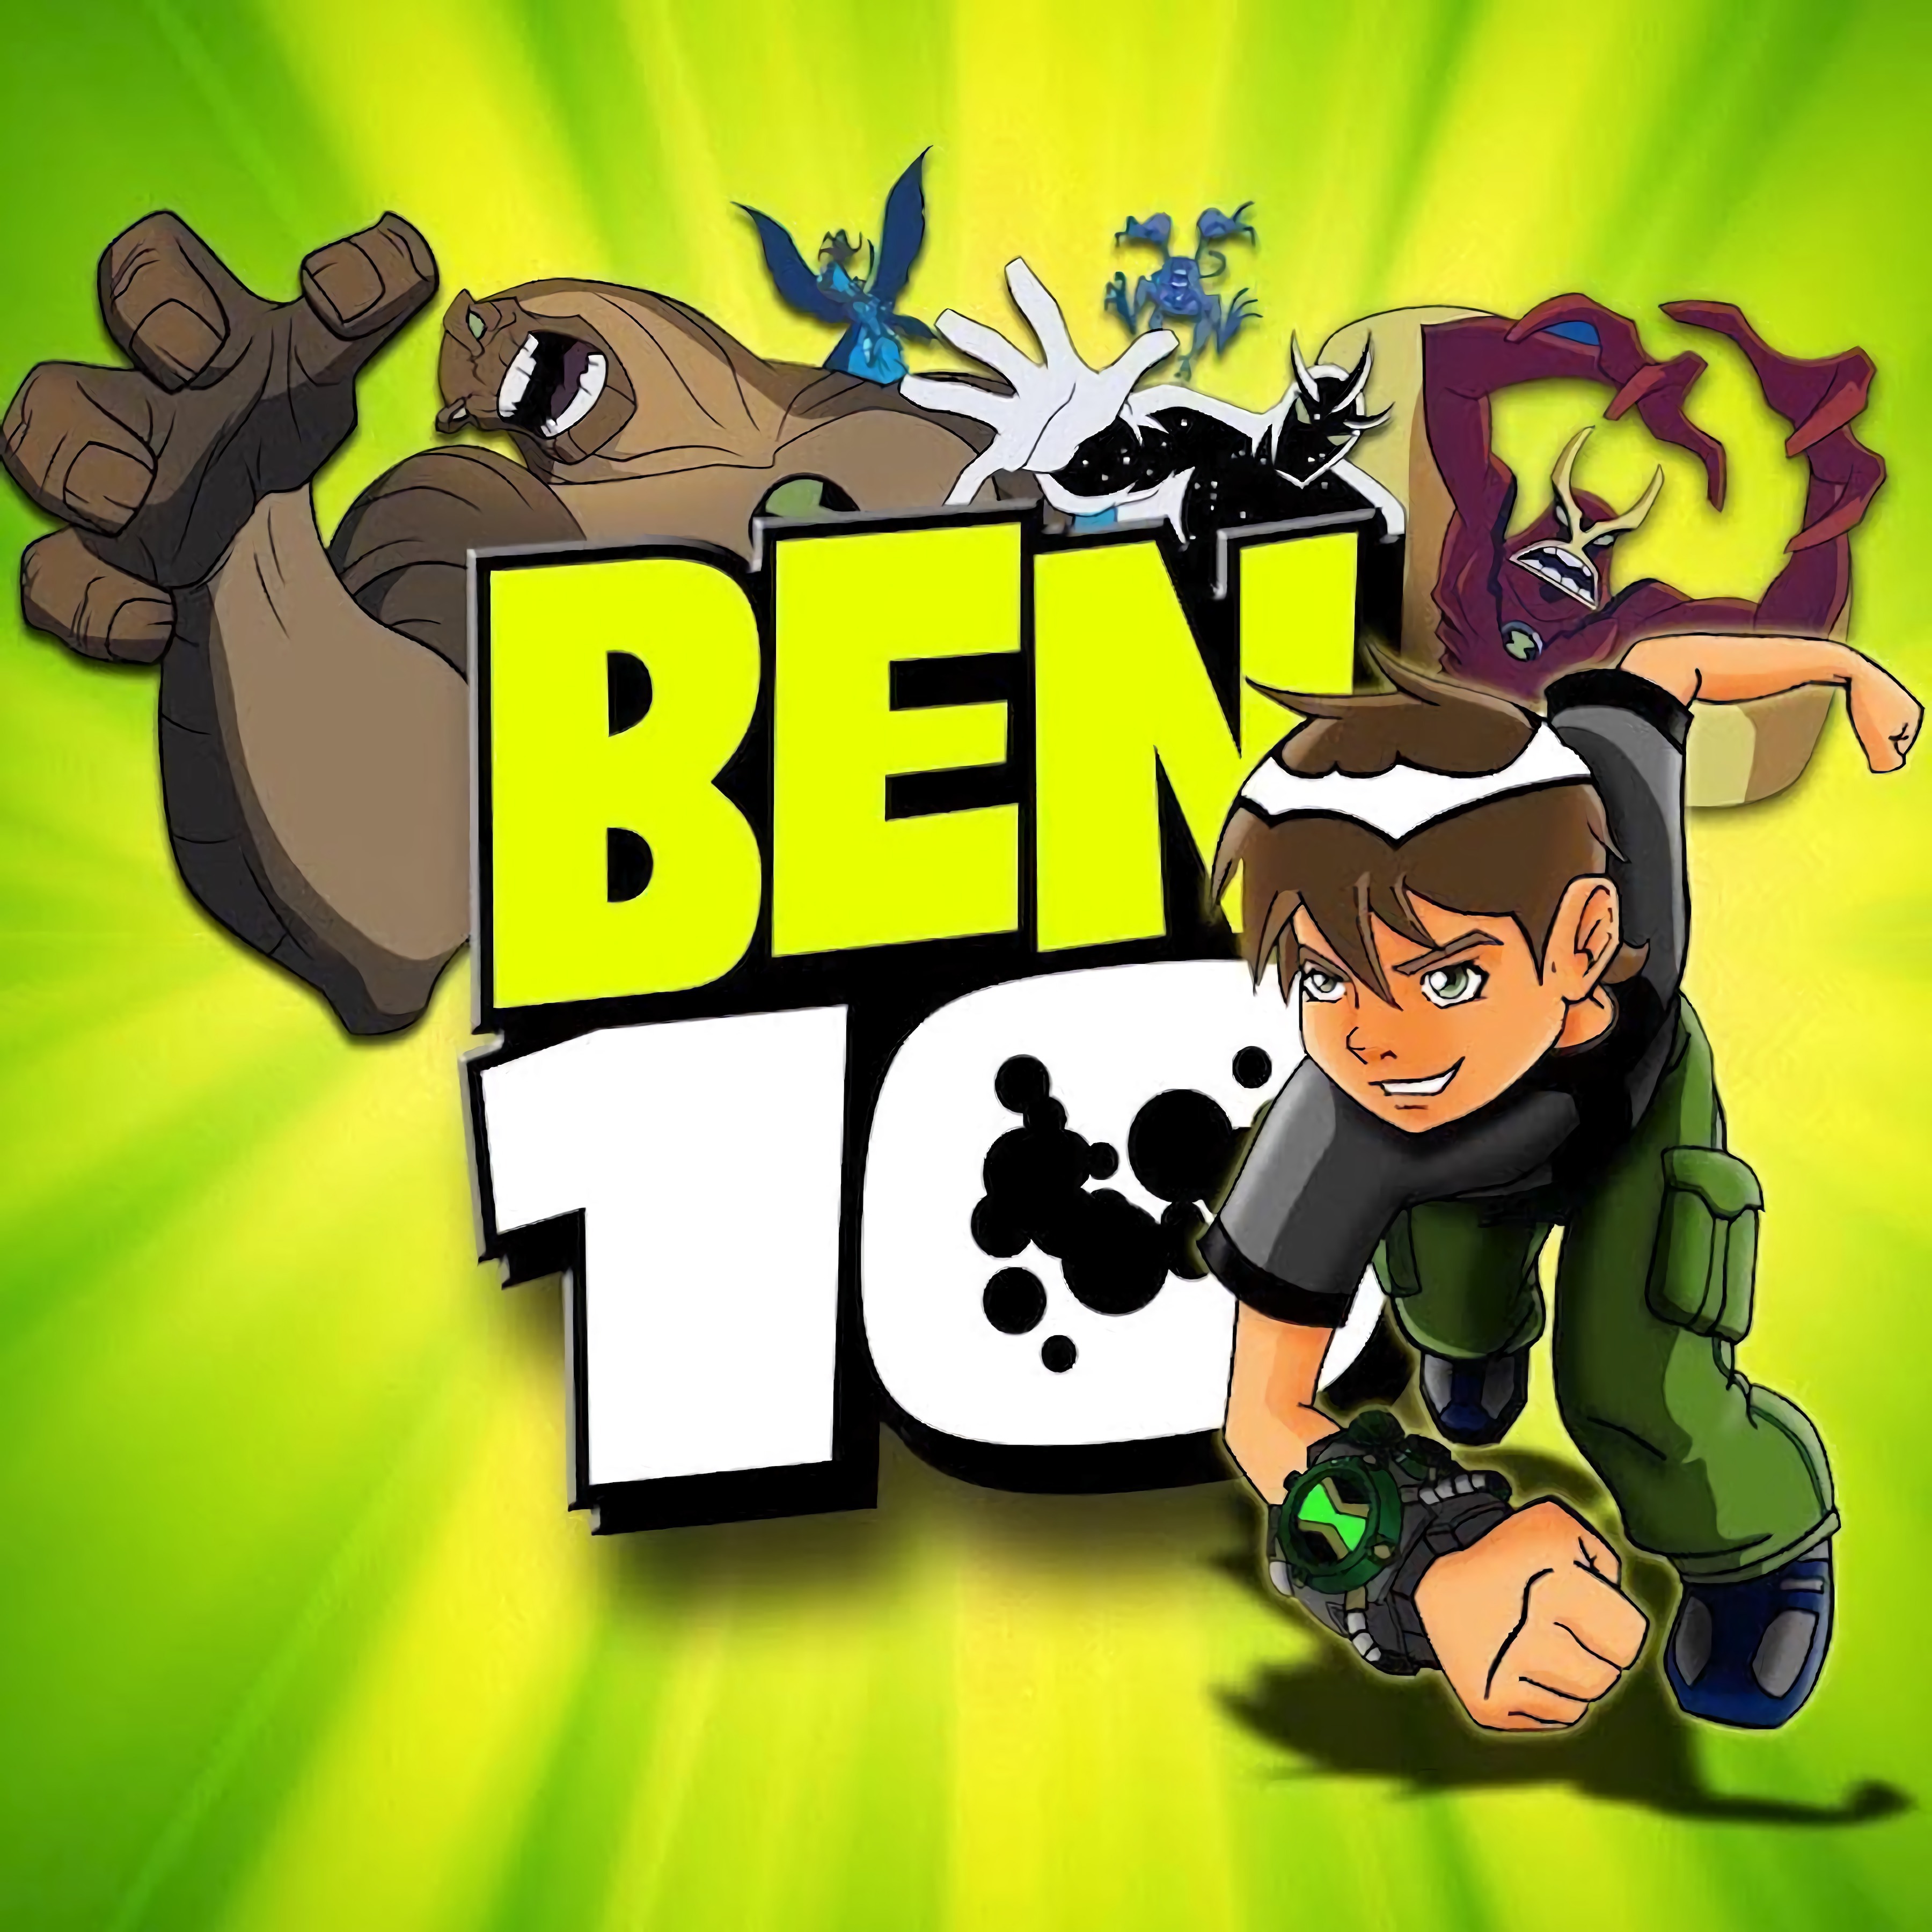 Hero Time - Ben 10